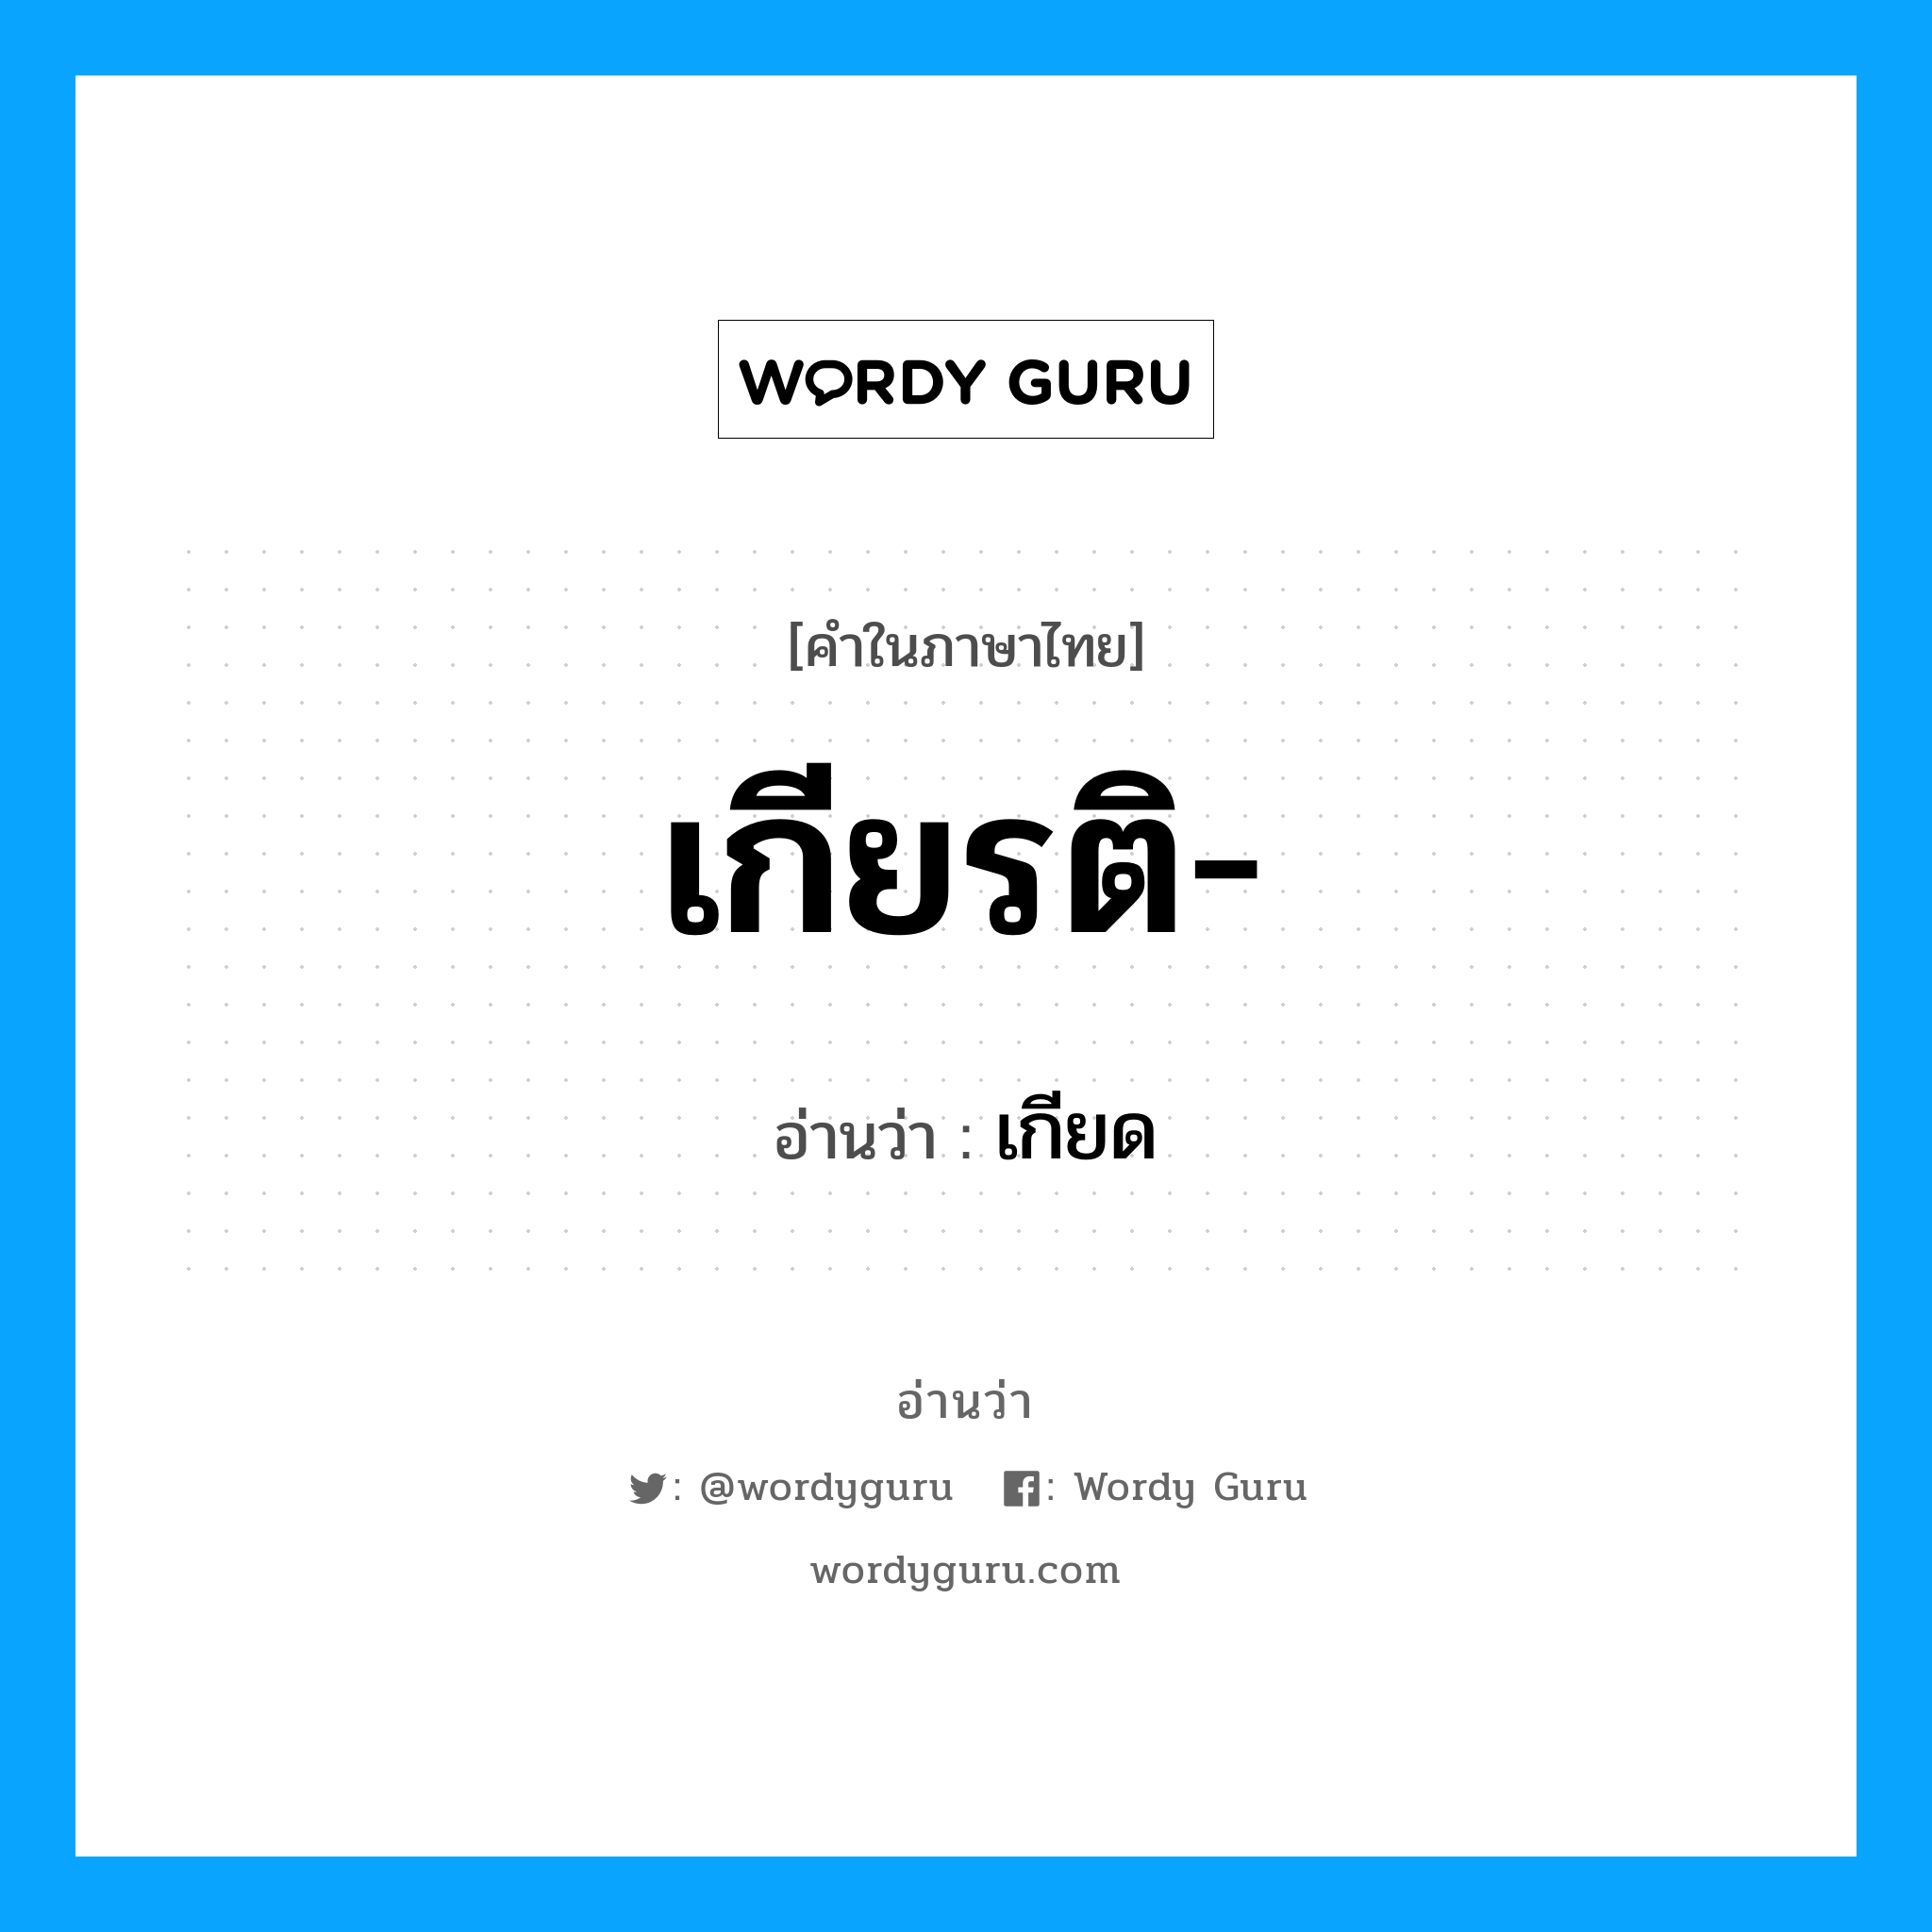 เกียด เป็นคำอ่านของคำไหน?, คำในภาษาไทย เกียด อ่านว่า เกียรติ-